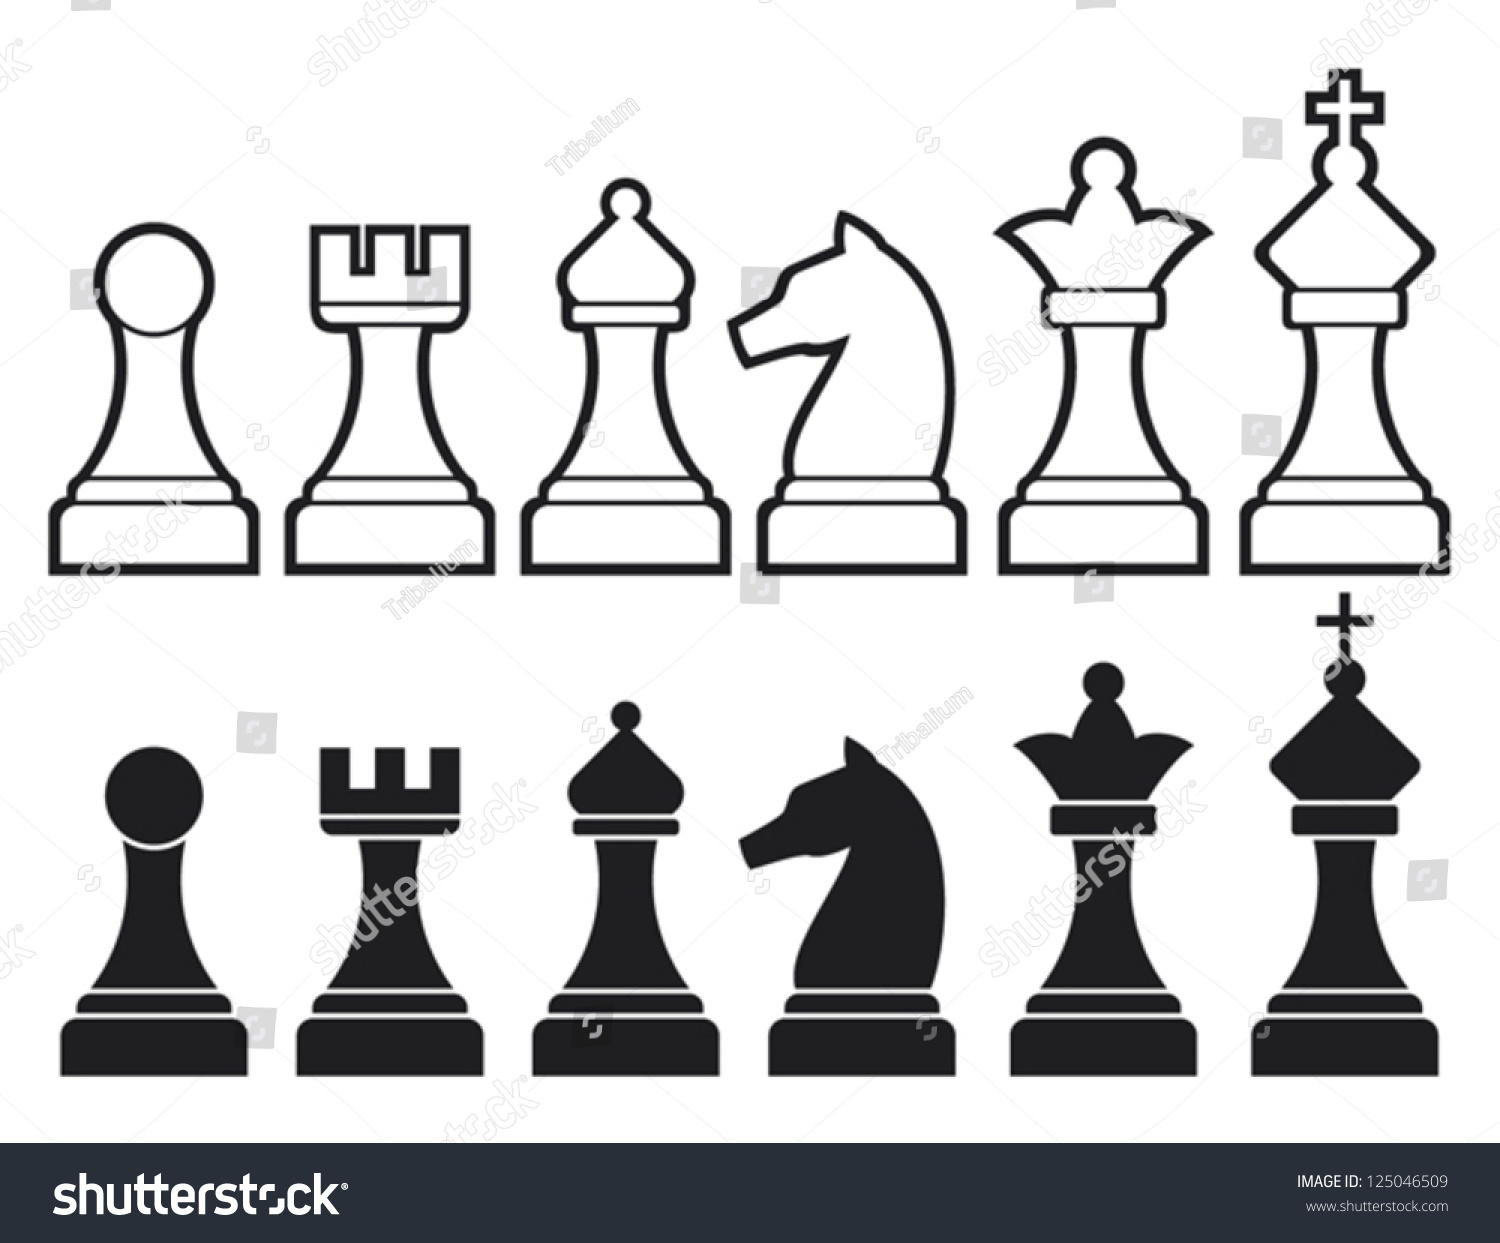 キング クイーン ルーク ポーン ナイト ビショップなどのチェスの駒 のベクター画像素材 ロイヤリティフリー